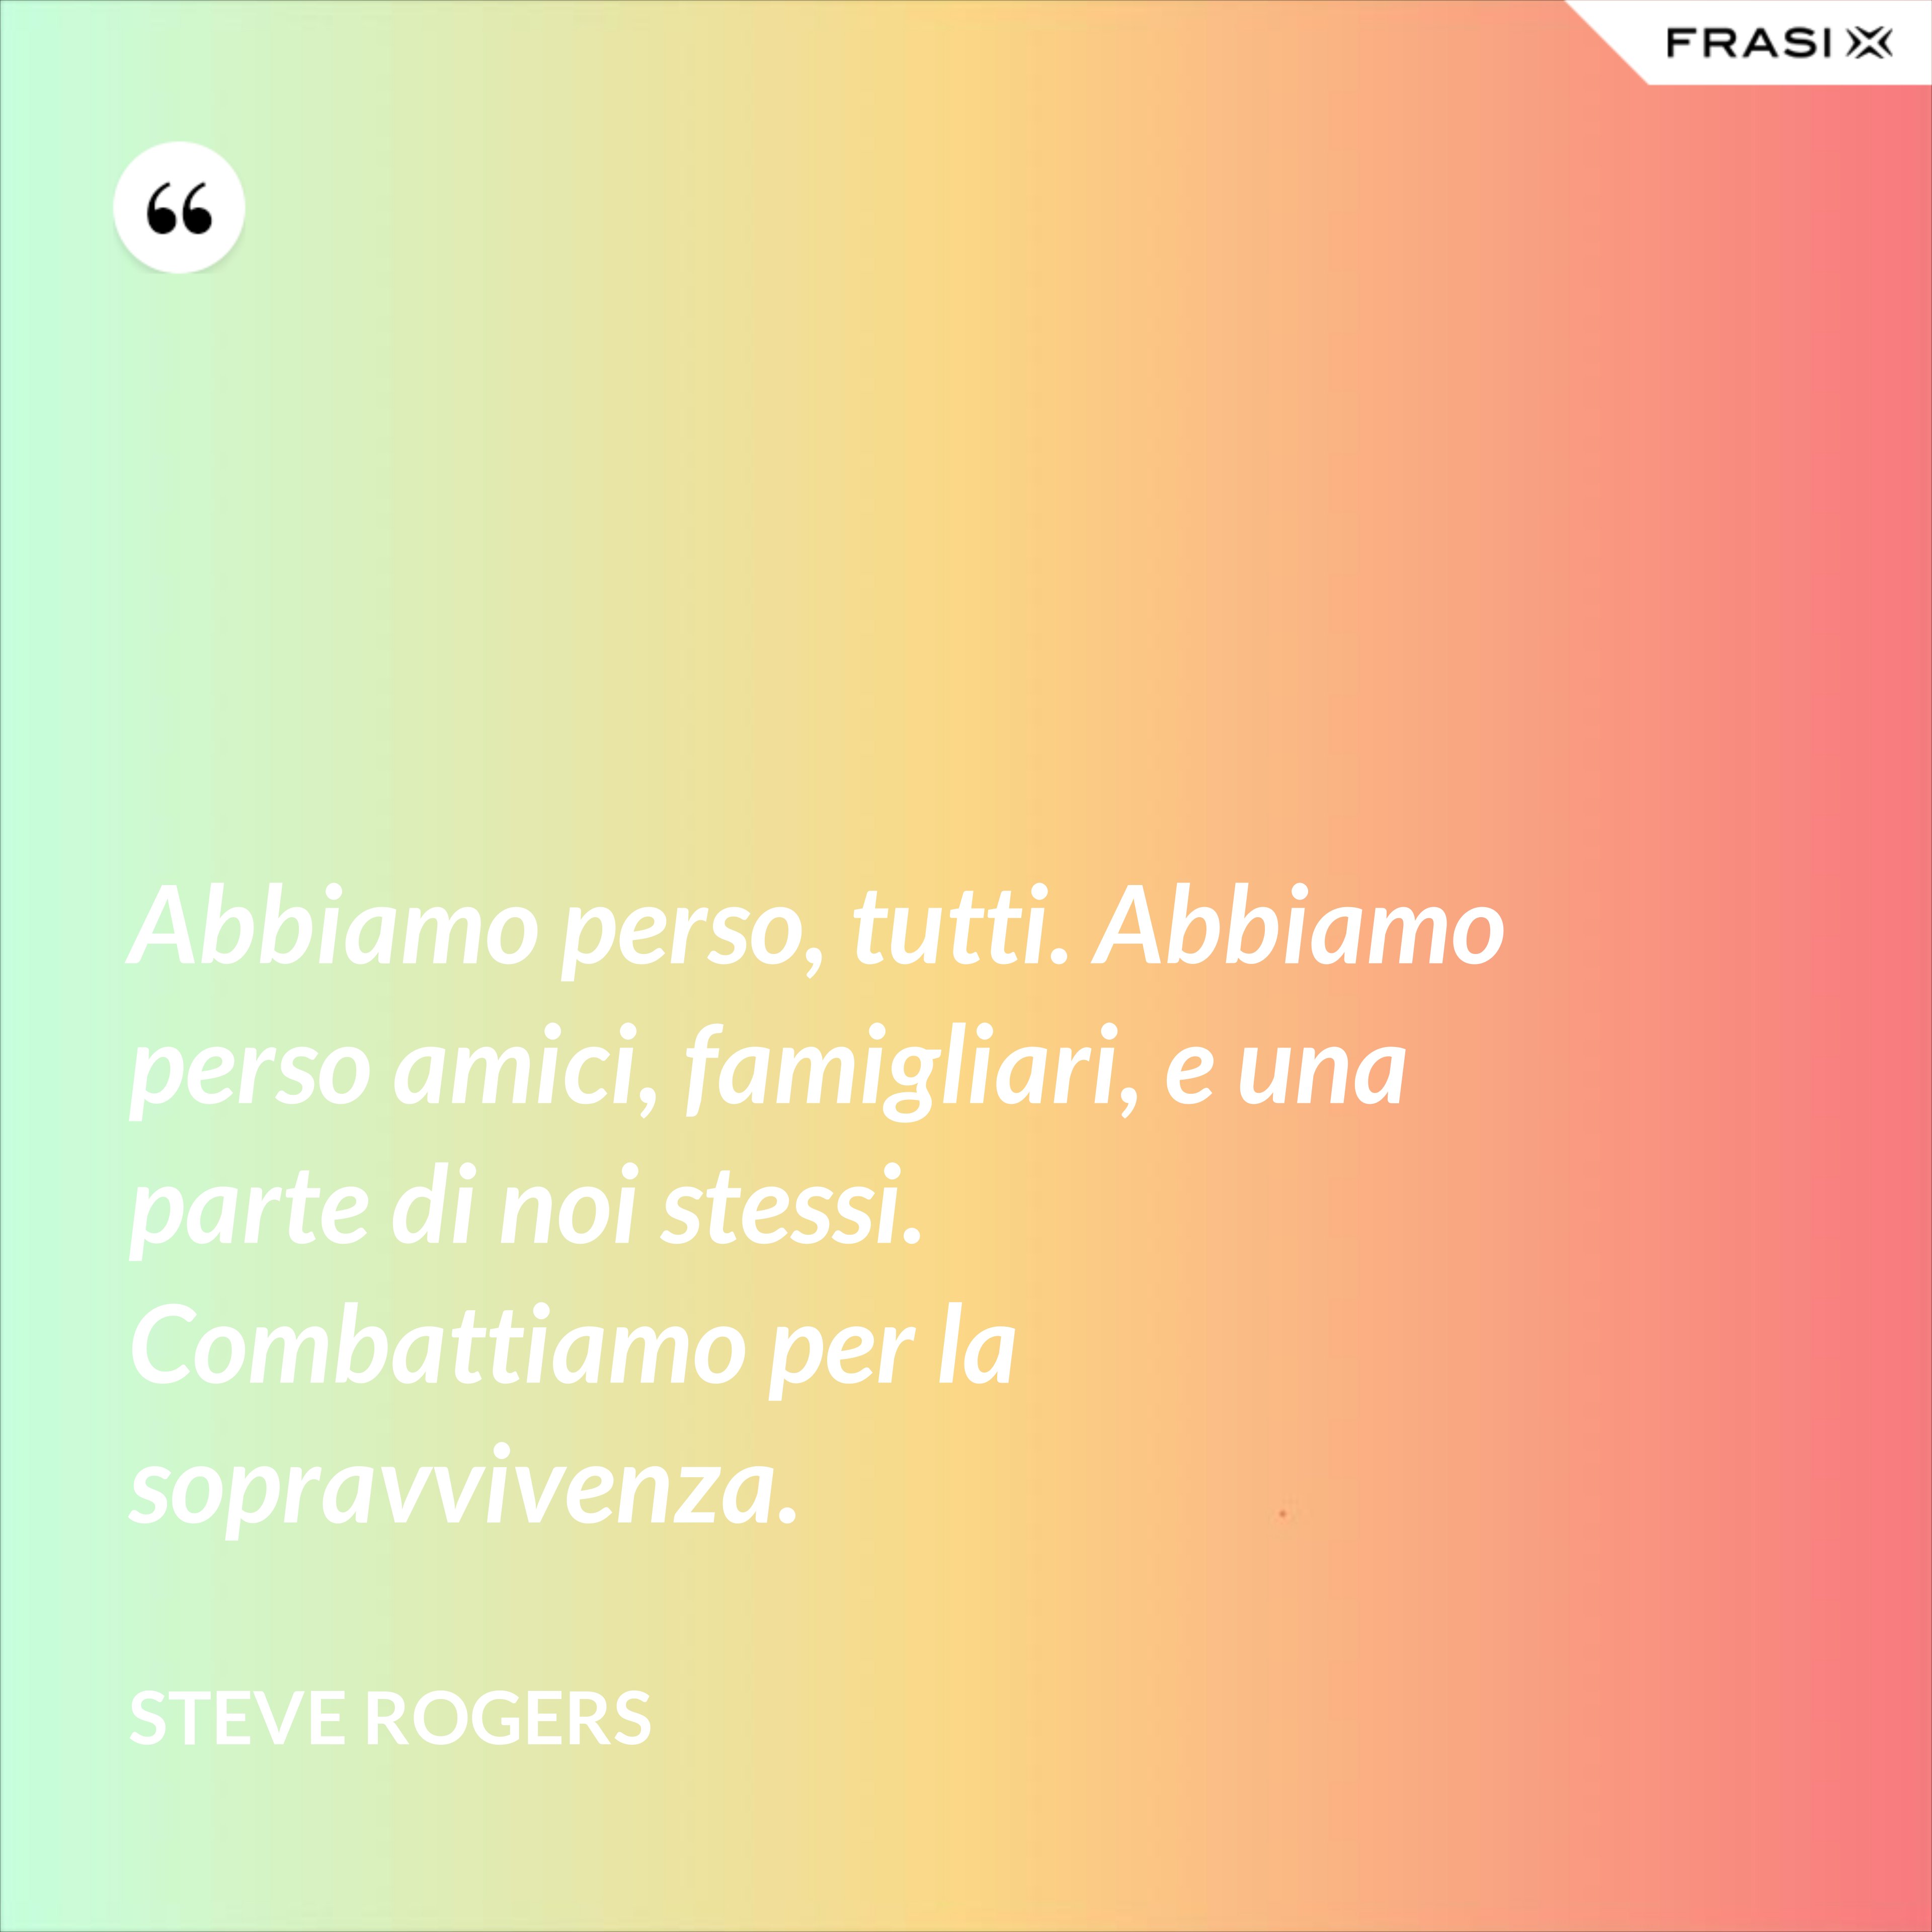 Abbiamo perso, tutti. Abbiamo perso amici, famigliari, e una parte di noi stessi. Combattiamo per la sopravvivenza. - Steve Rogers